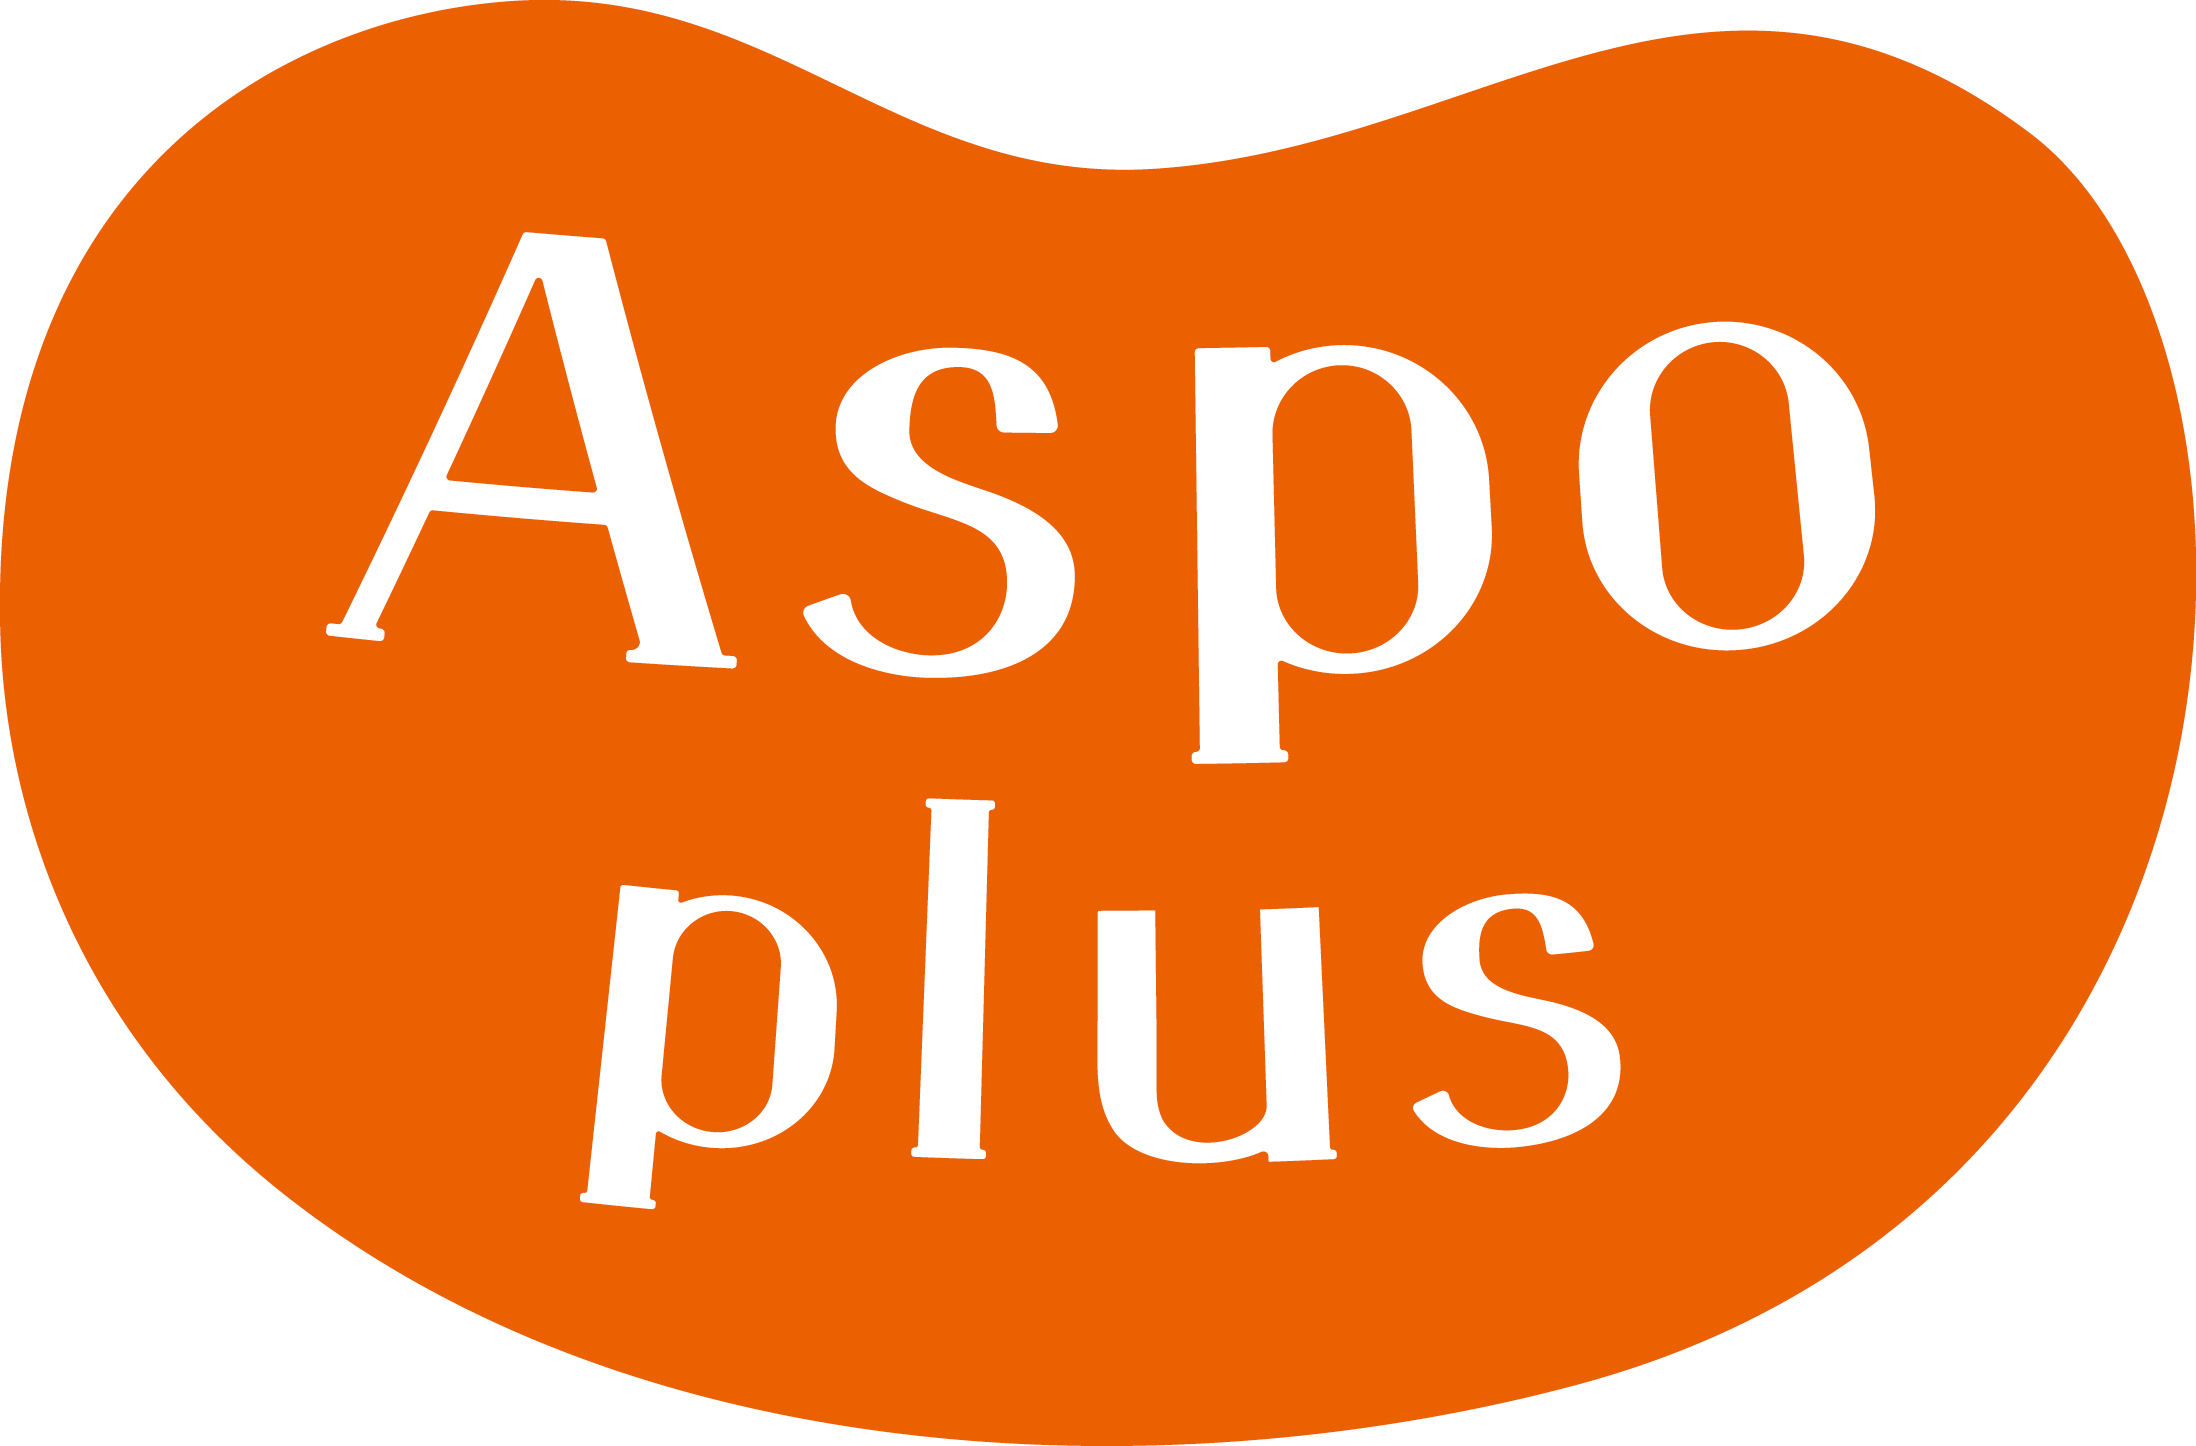 Aspo plus（アスポ編集室）